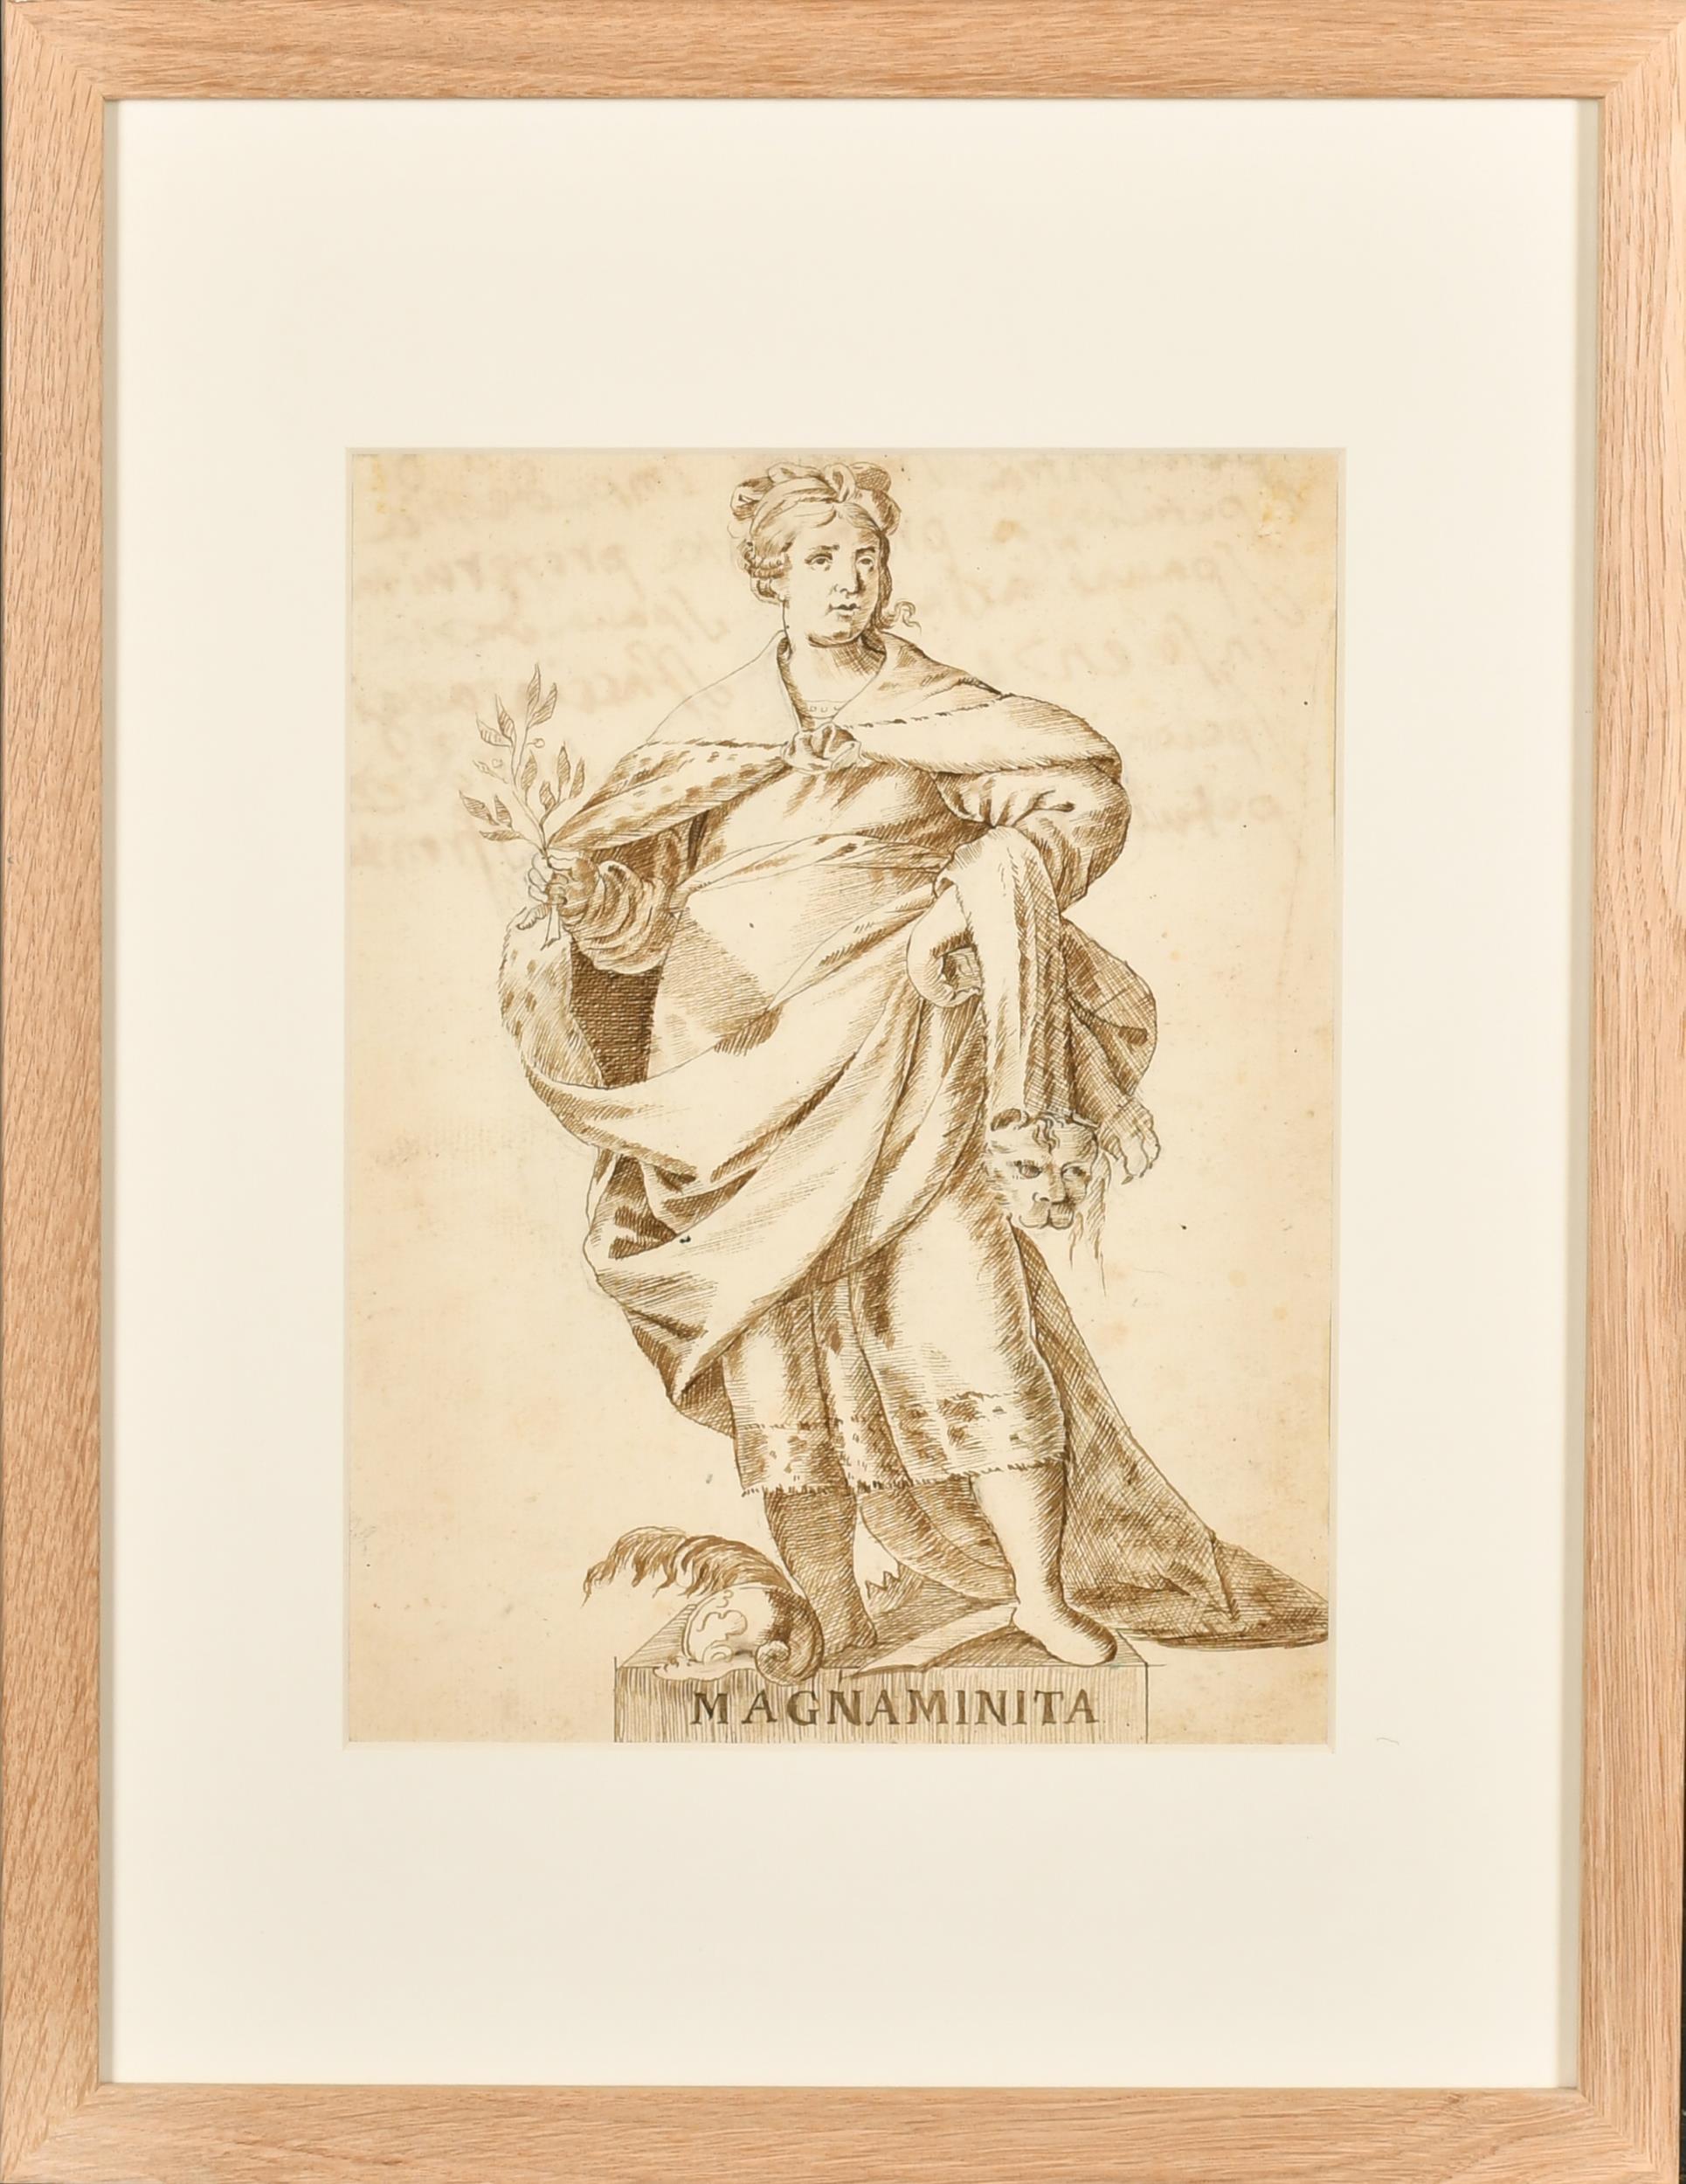 Fine gravure italienne allégorique romaine Magnaminita à l'encre et au lave-vaisselle des années 1700 - Painting de 18thC Italian Old Master